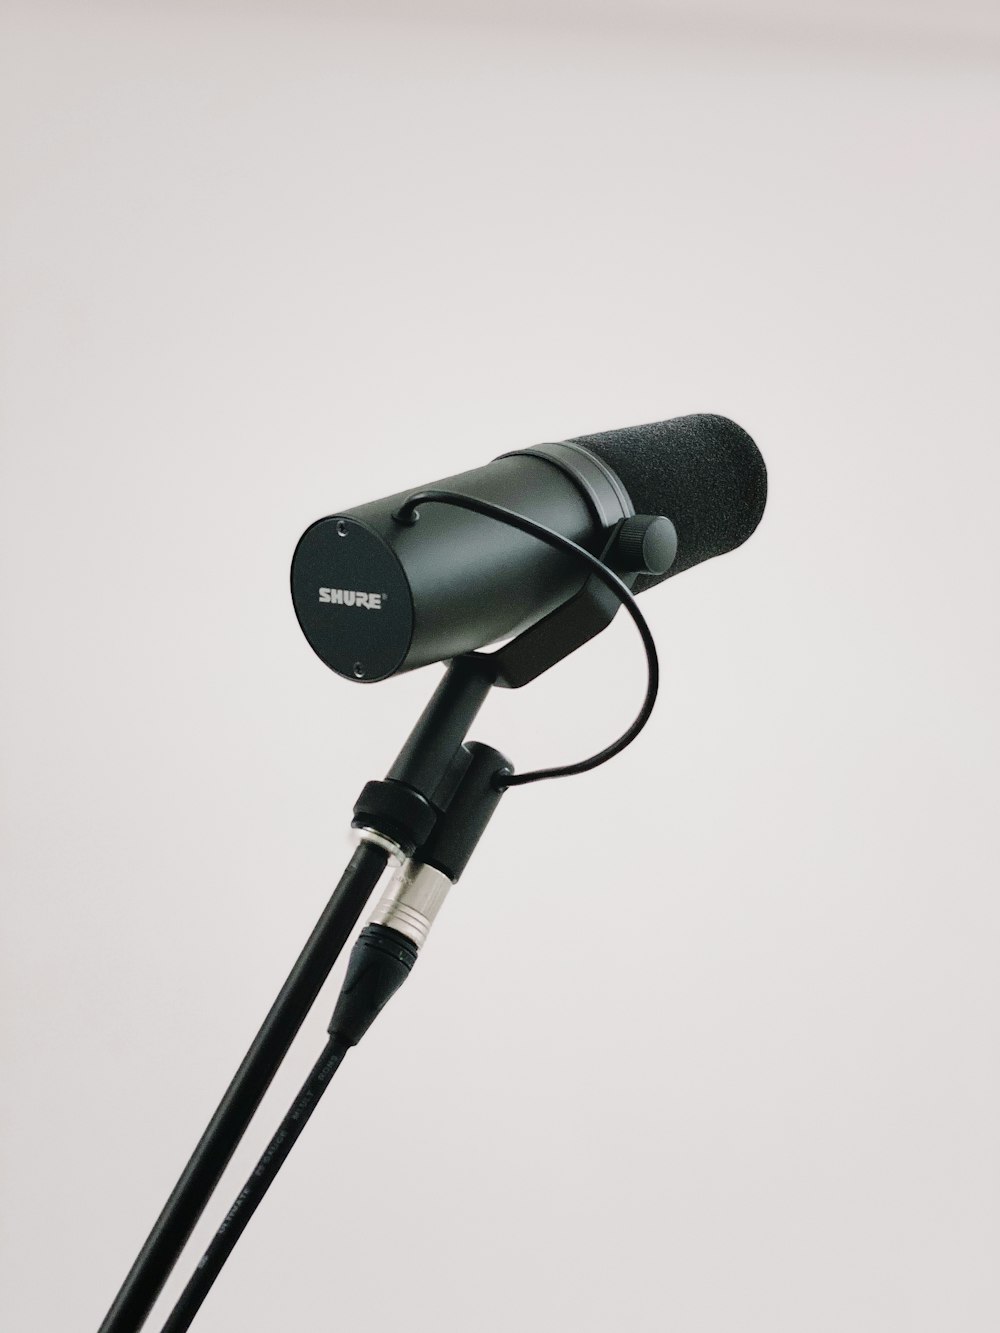 microfone preto com suporte no fundo branco